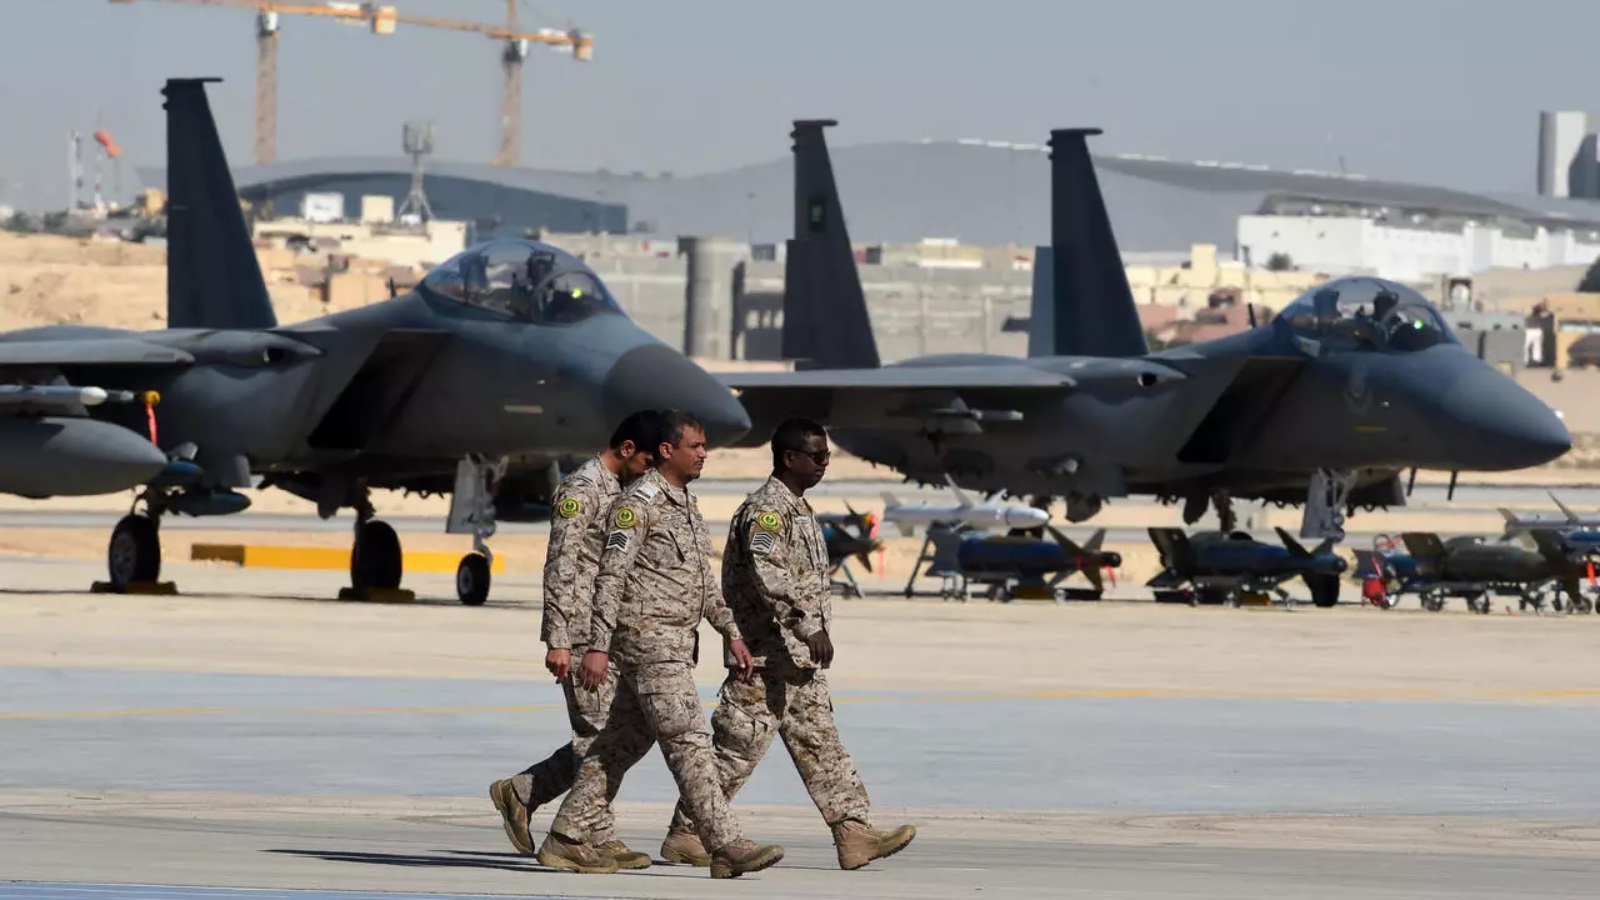 ضباط عسكريون سعوديون يمرون أمام طائرات مقاتلة من طراز F-15 وقنابل GBU وصواريخ معروضة خلال حفل بمناسبة الذكرى الخمسين لإنشاء أكاديمية الملك فيصل الجوية في قاعدة الملك سلمان الجوية في الرياض عام 2017